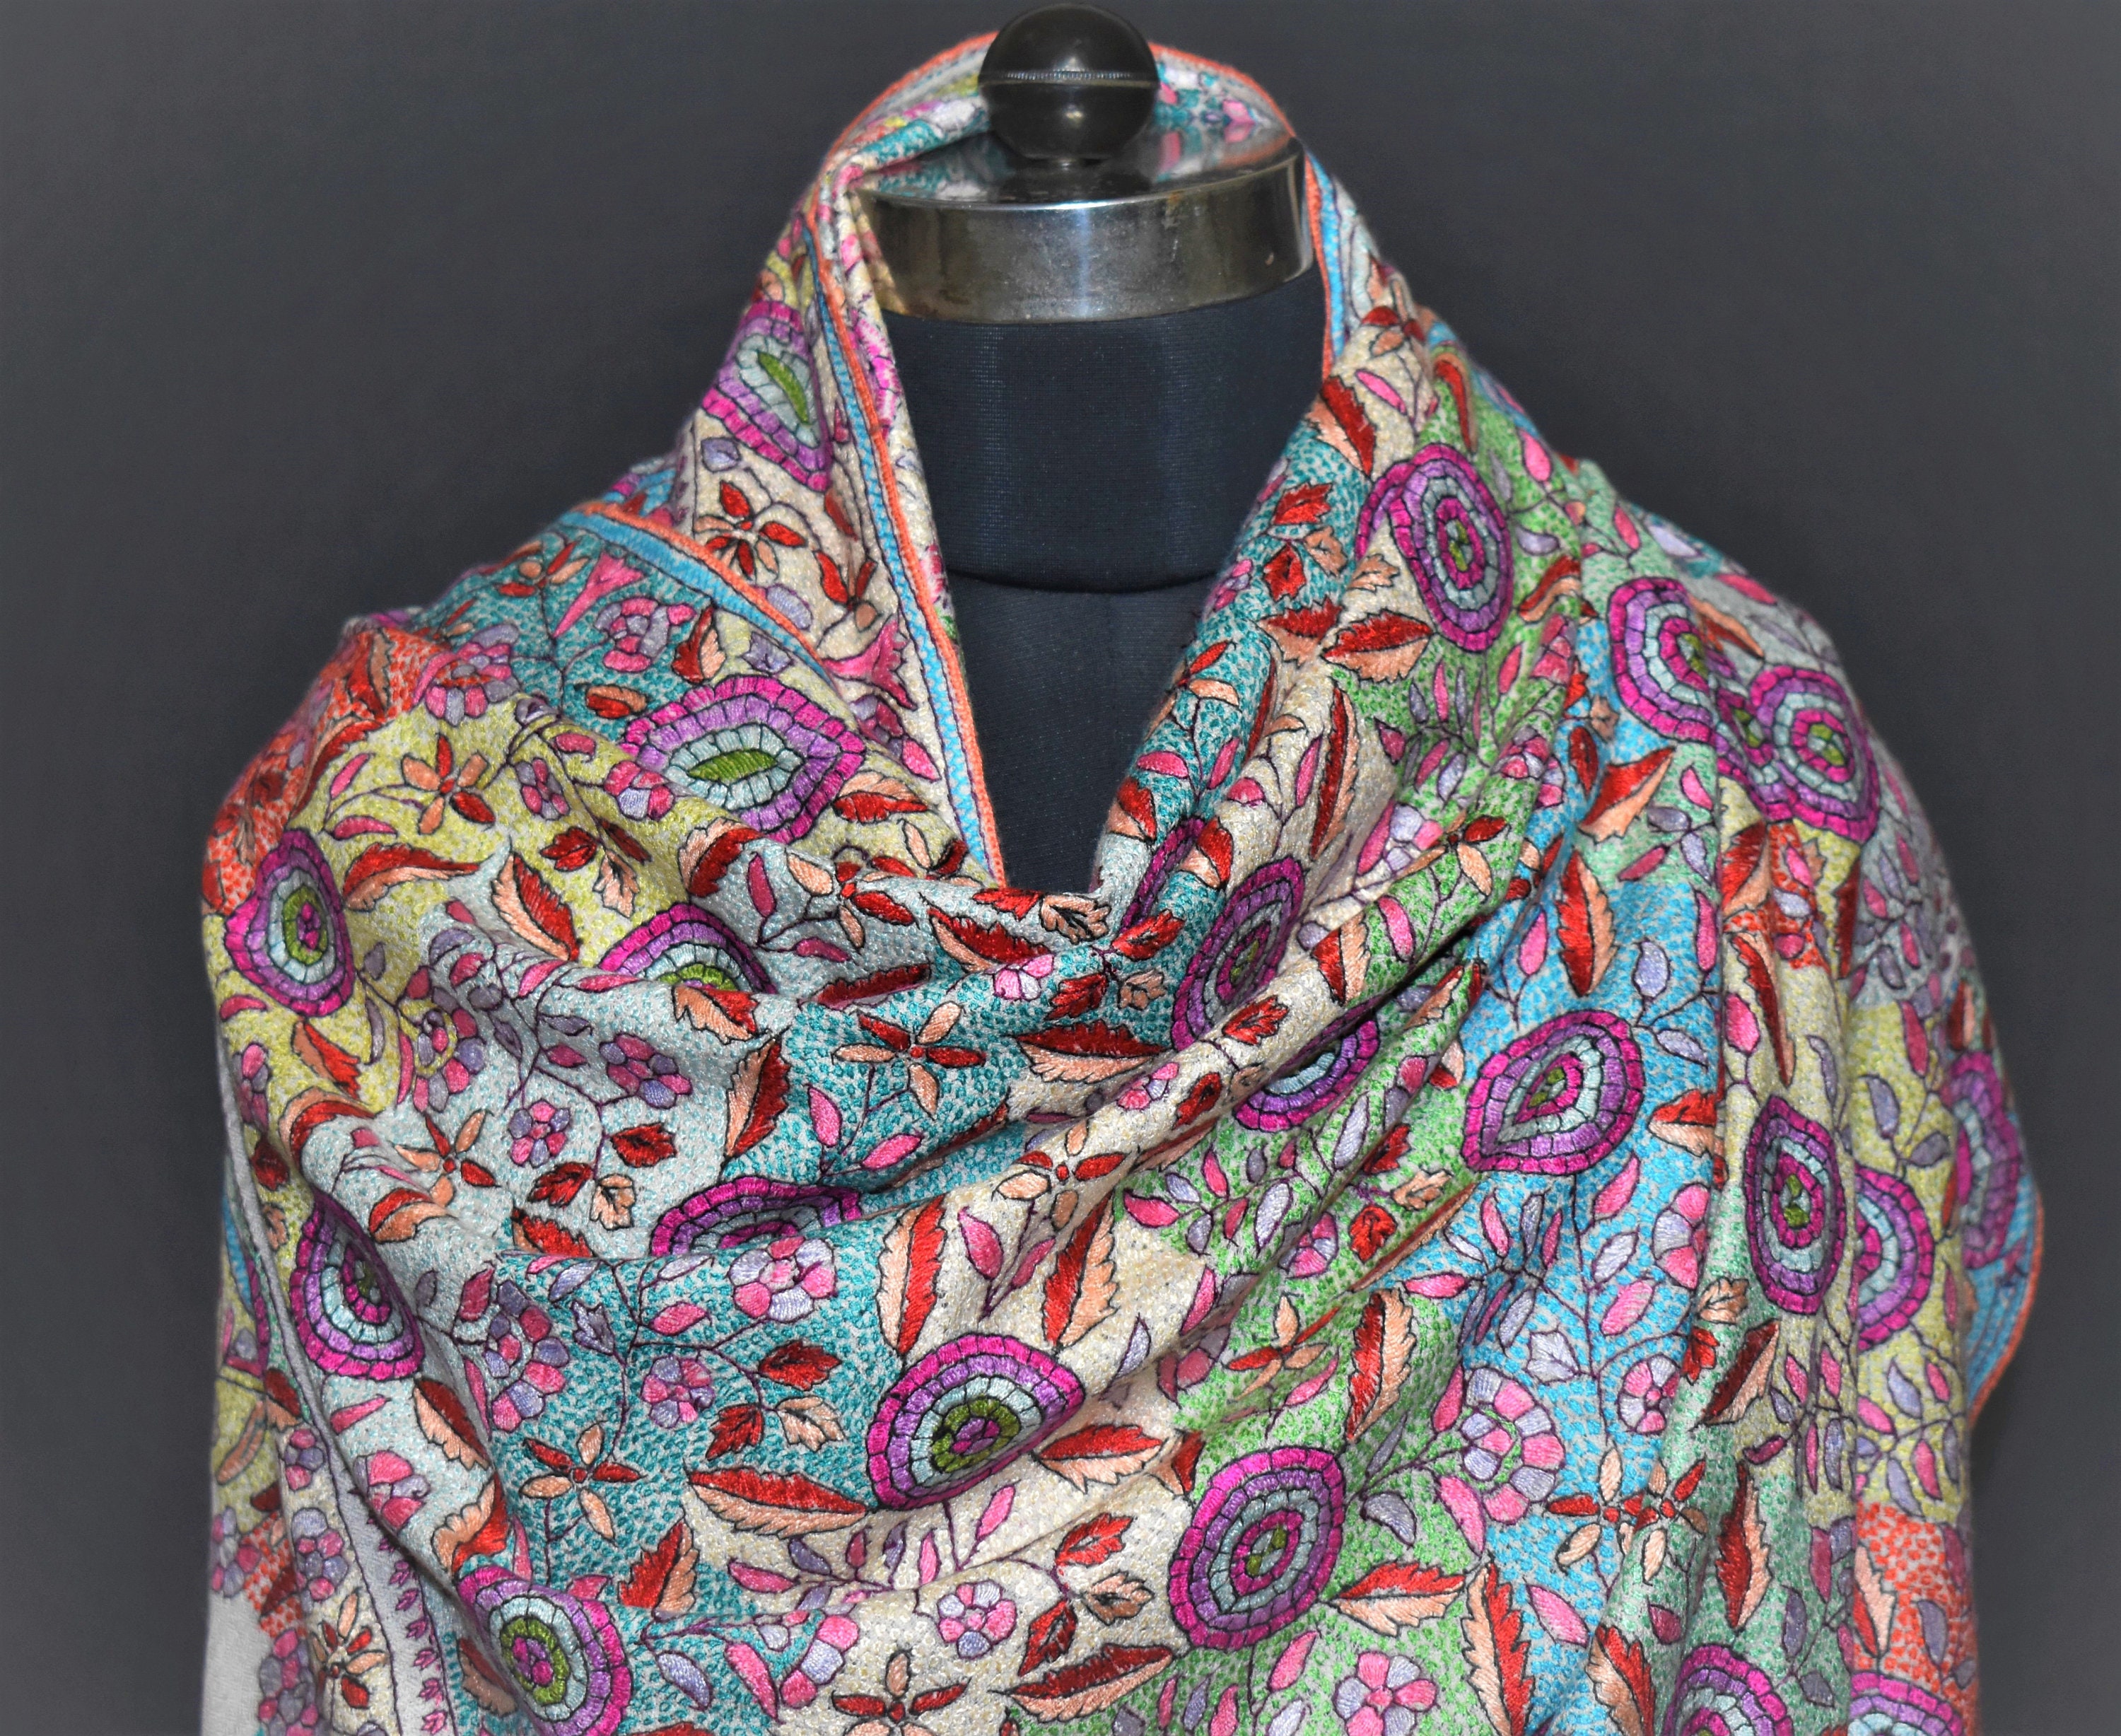 Pamposh shawlpashmina shawl made in kashmir hand made shawl | Etsy